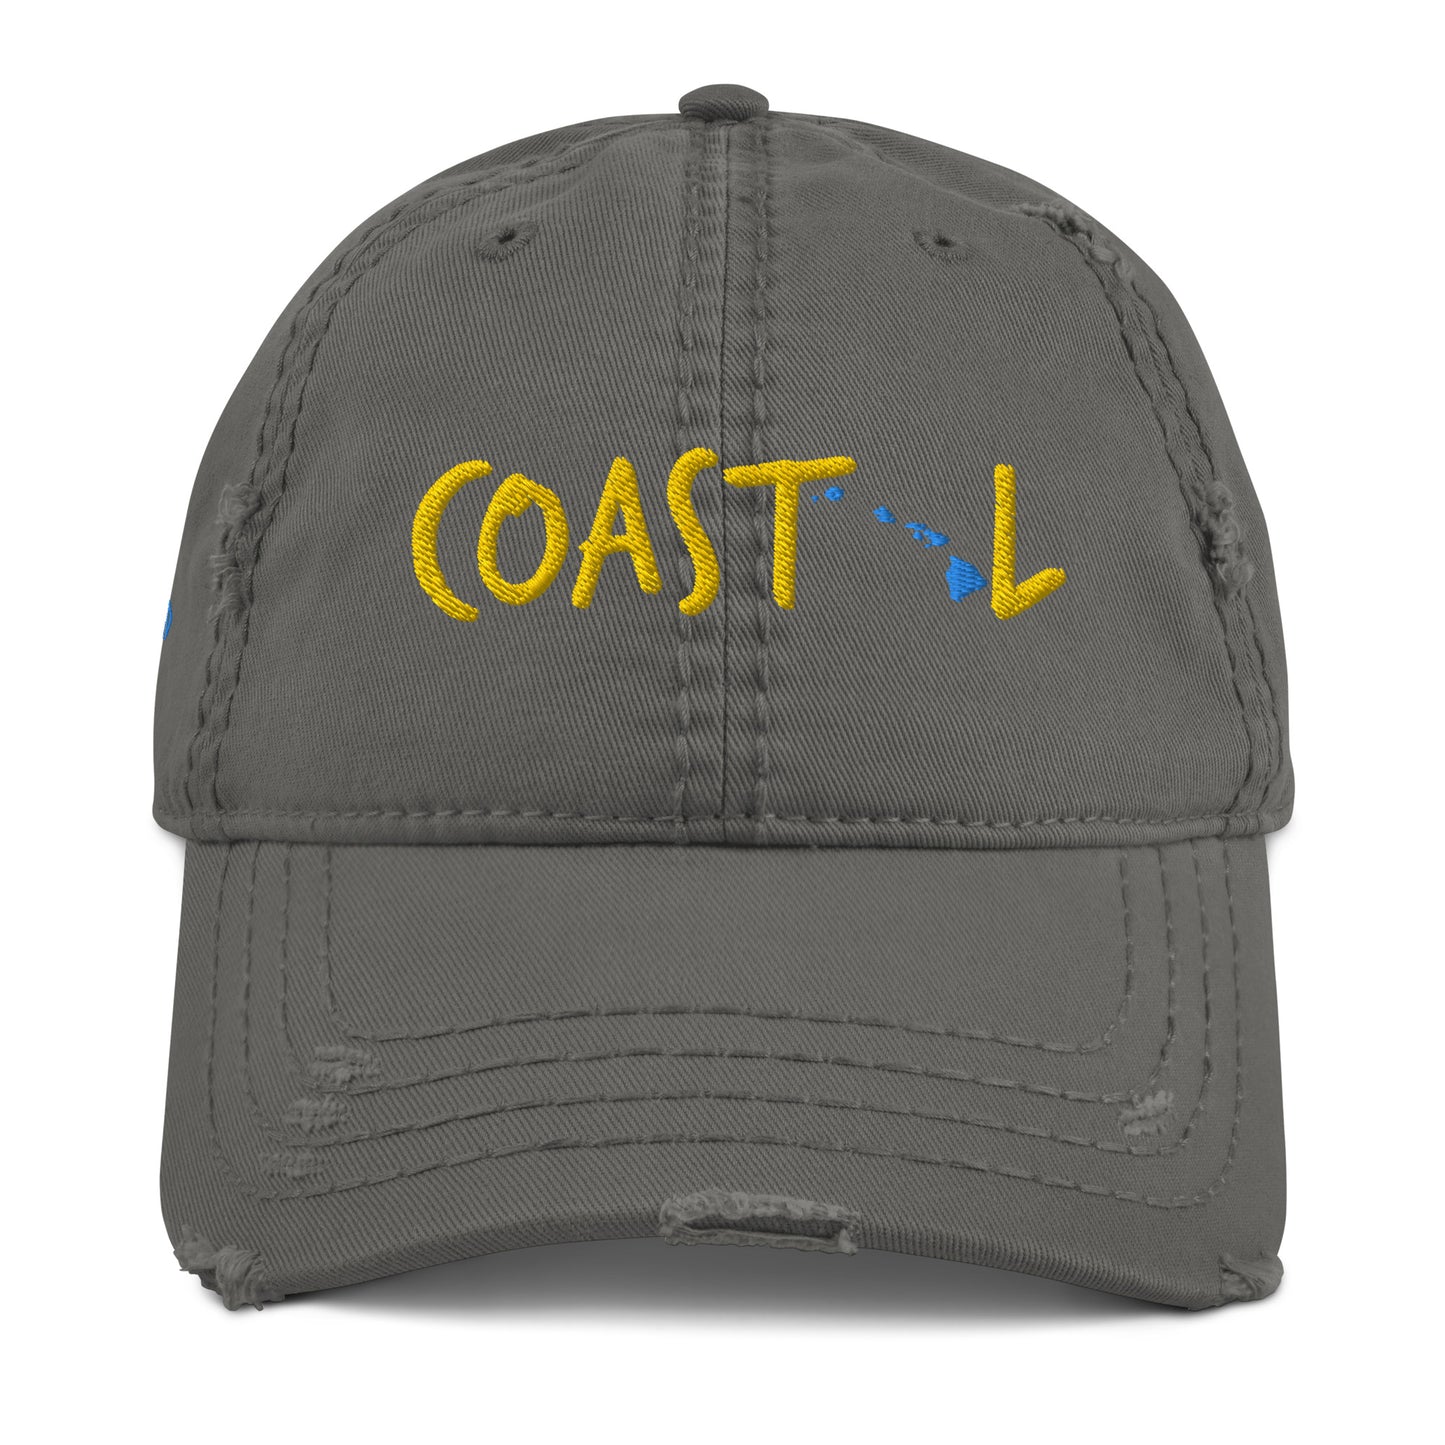 Coastal Hawaii™ Distressed Dad Hat